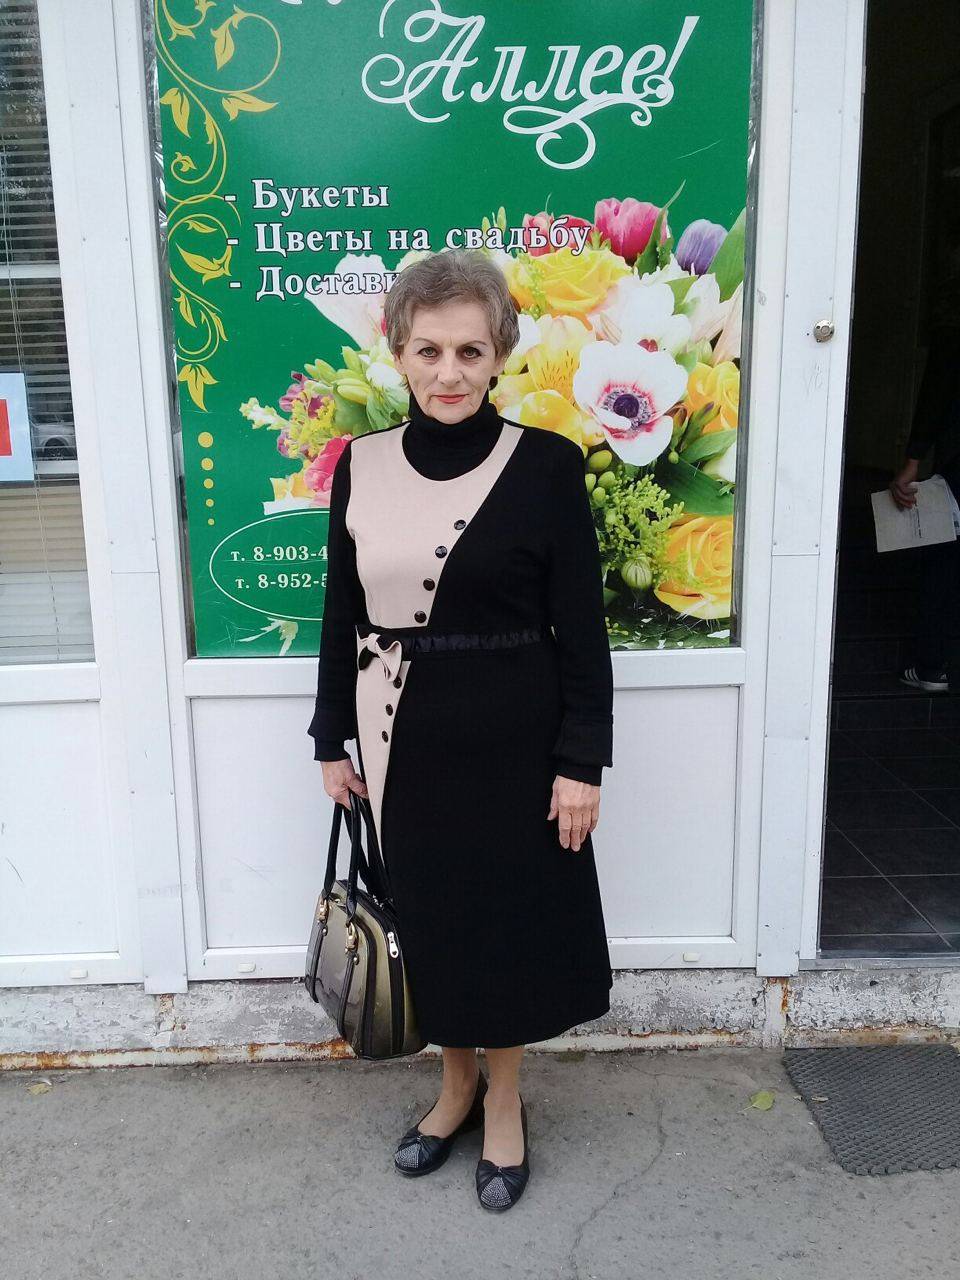 В Шахтах 72-летнюю пенсионерку отправили в колонию на 5,5 года за репост